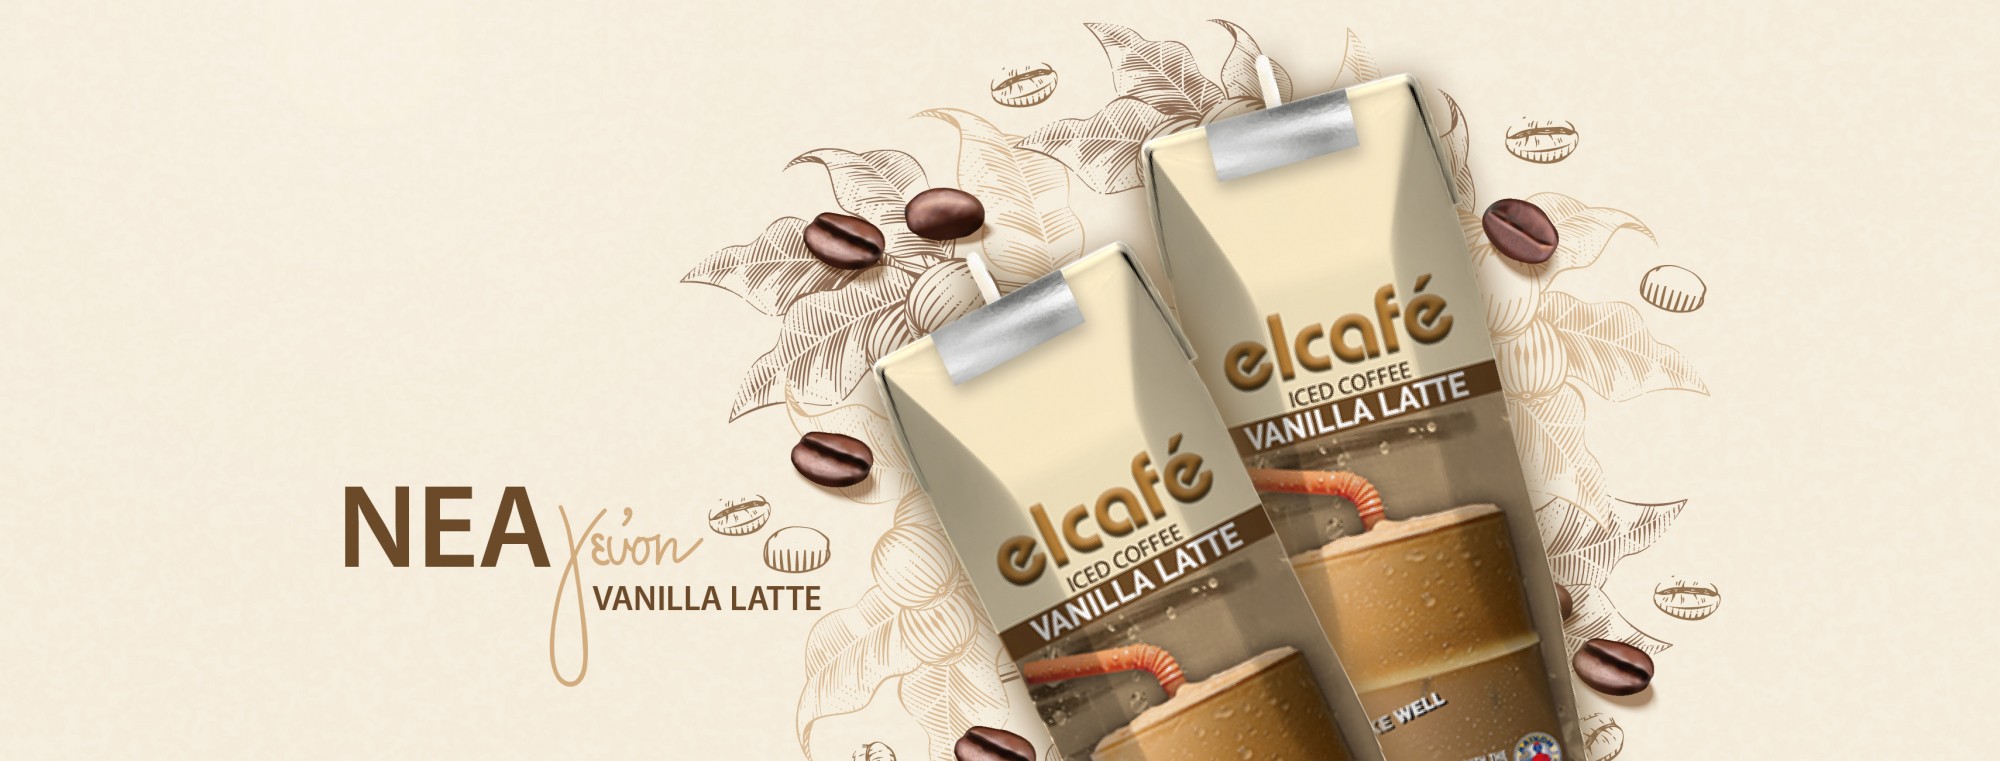 Ανακάλυψε το νέο Elcafe Vanilla Latte!